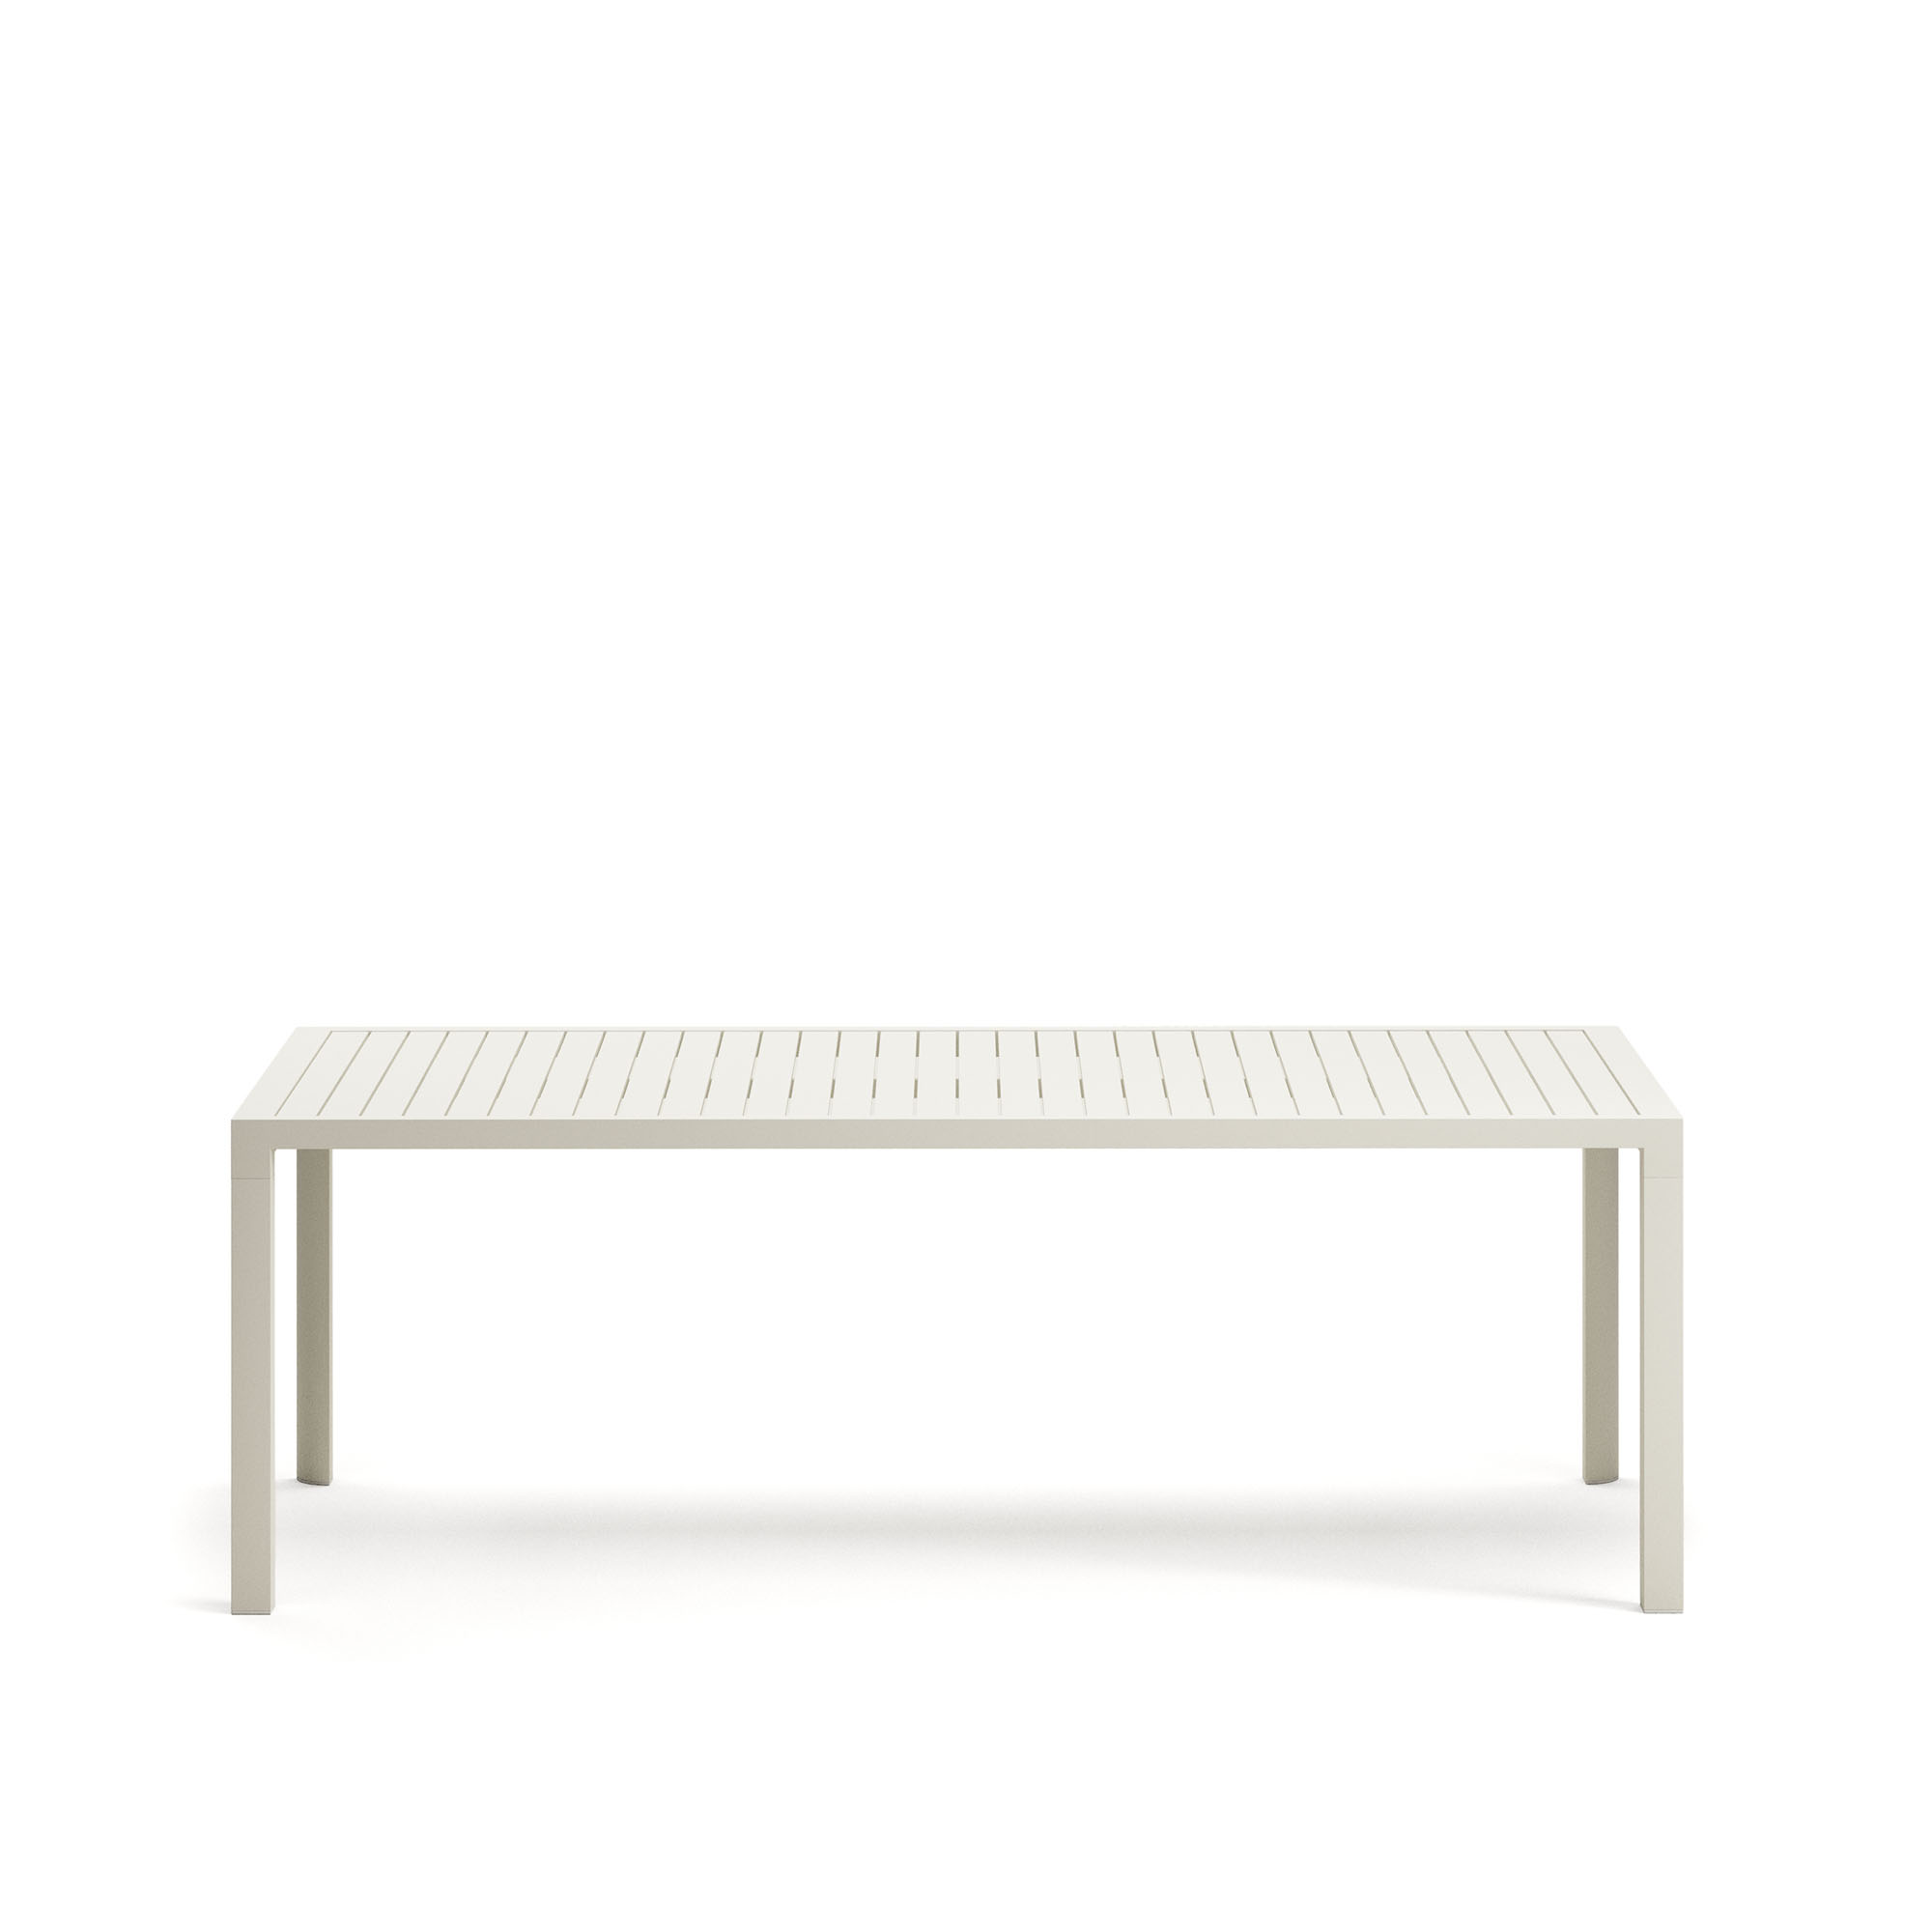 LAFORMA Culip havebord, rektangulær - hvid aluminium (220x100)